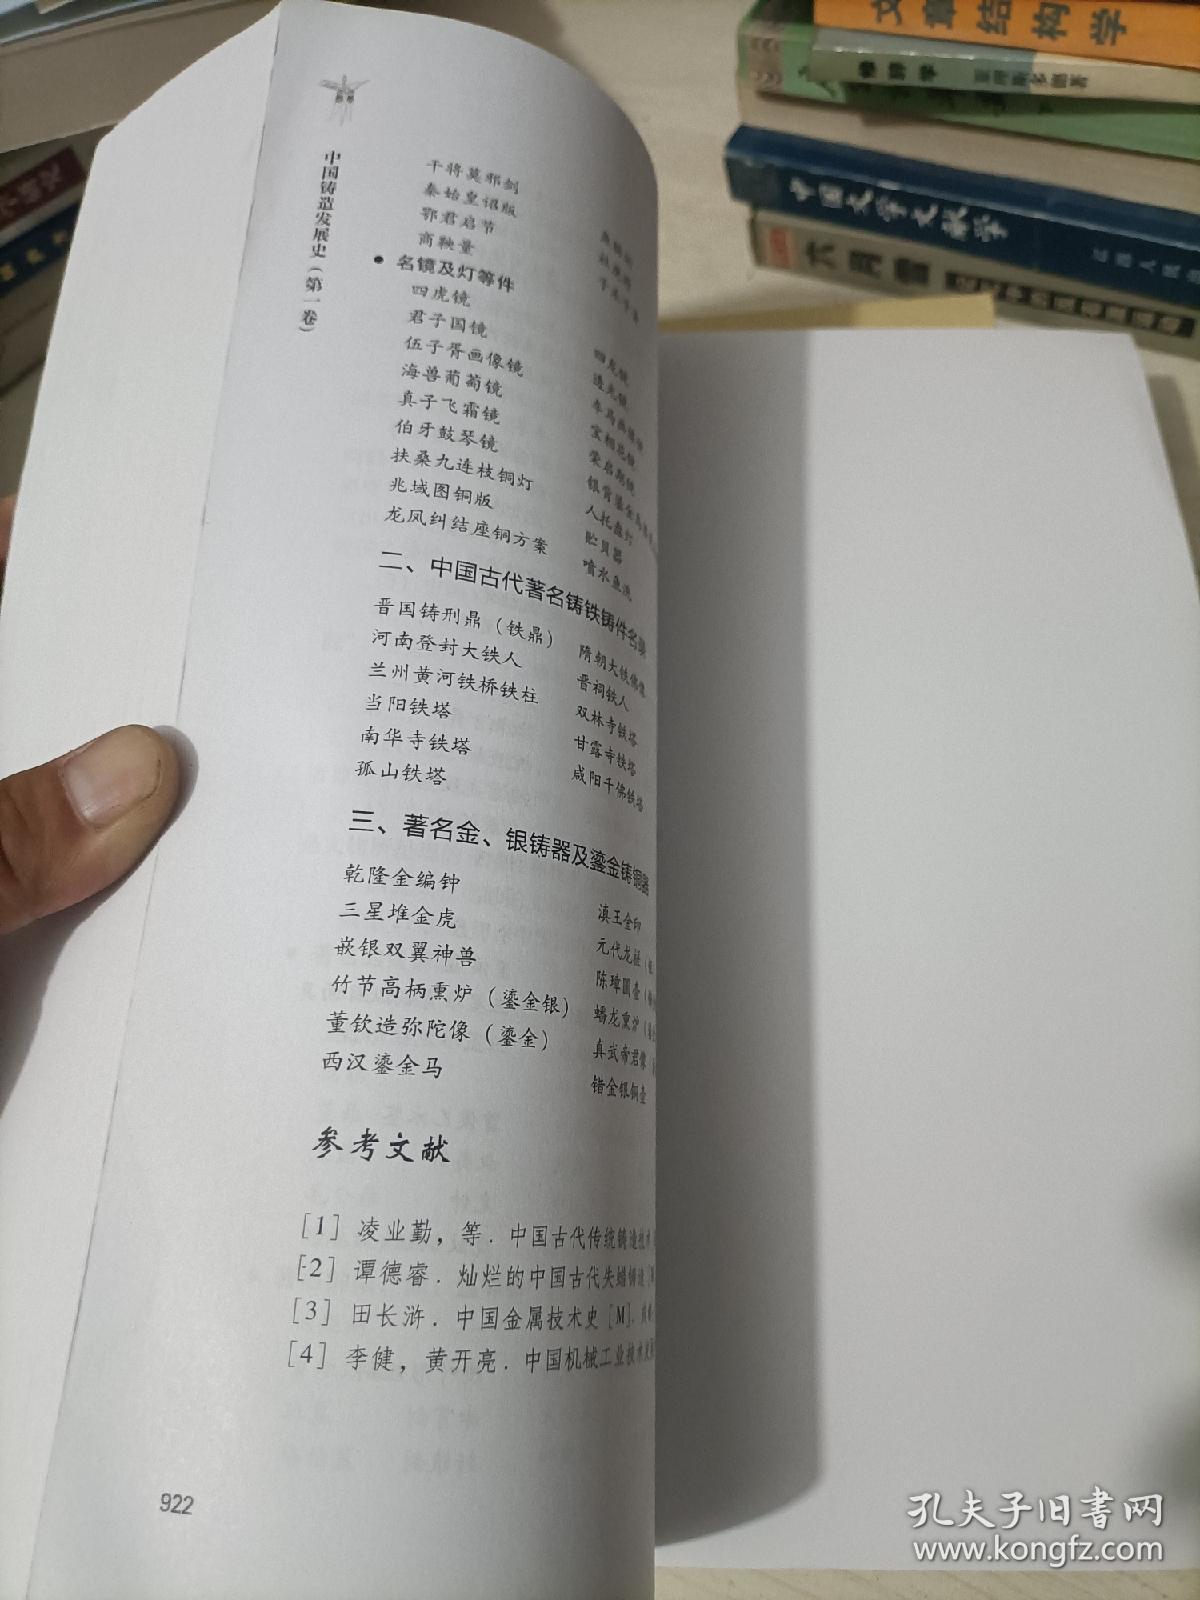 中国铸造发展史（第一卷)下册